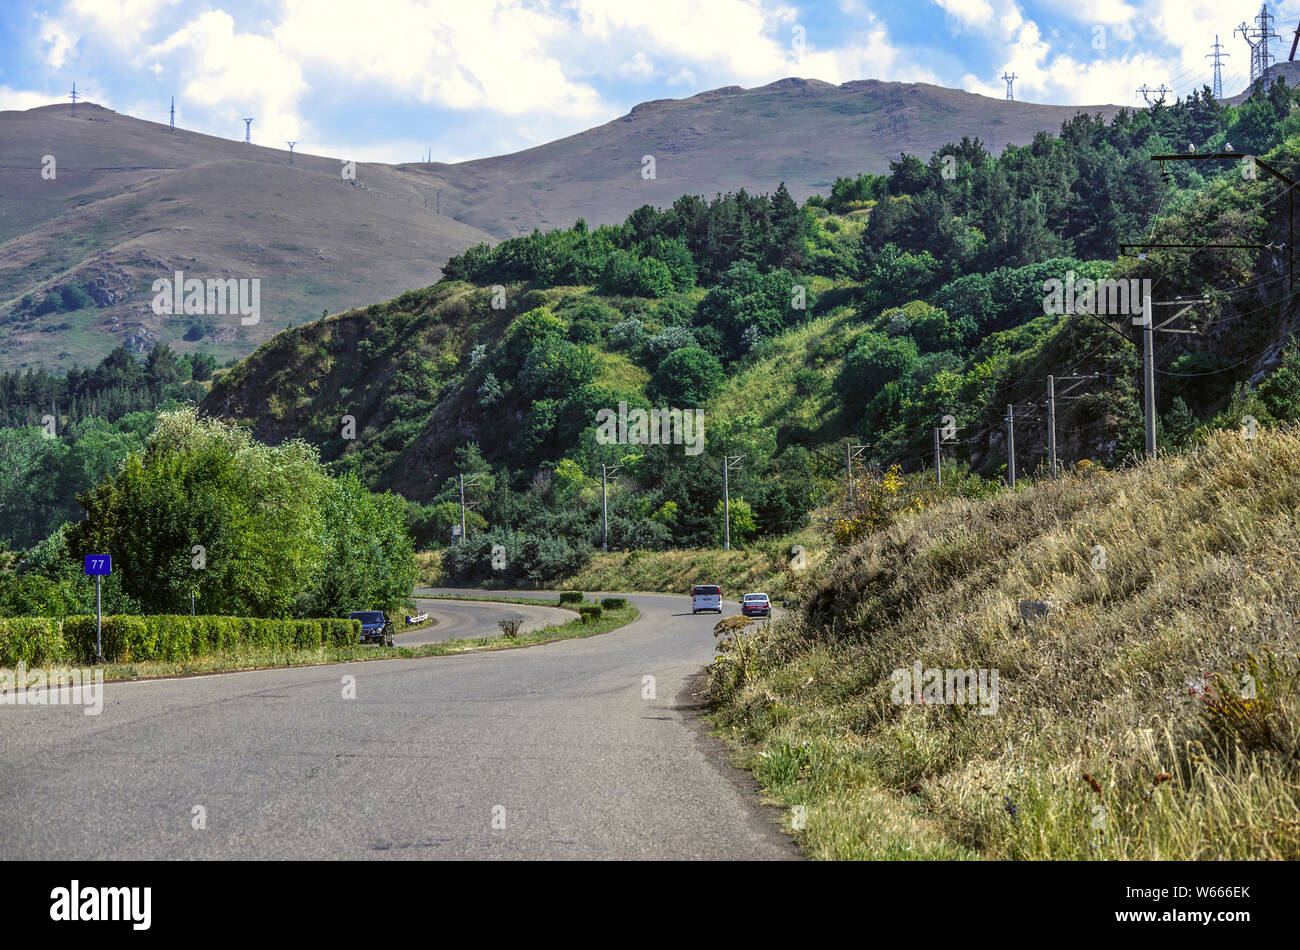 Carretera a través de la montaña entre los árboles que conduce a la alta montaña, el lago Sevan en Gegharkunik región de Armenia Foto de stock